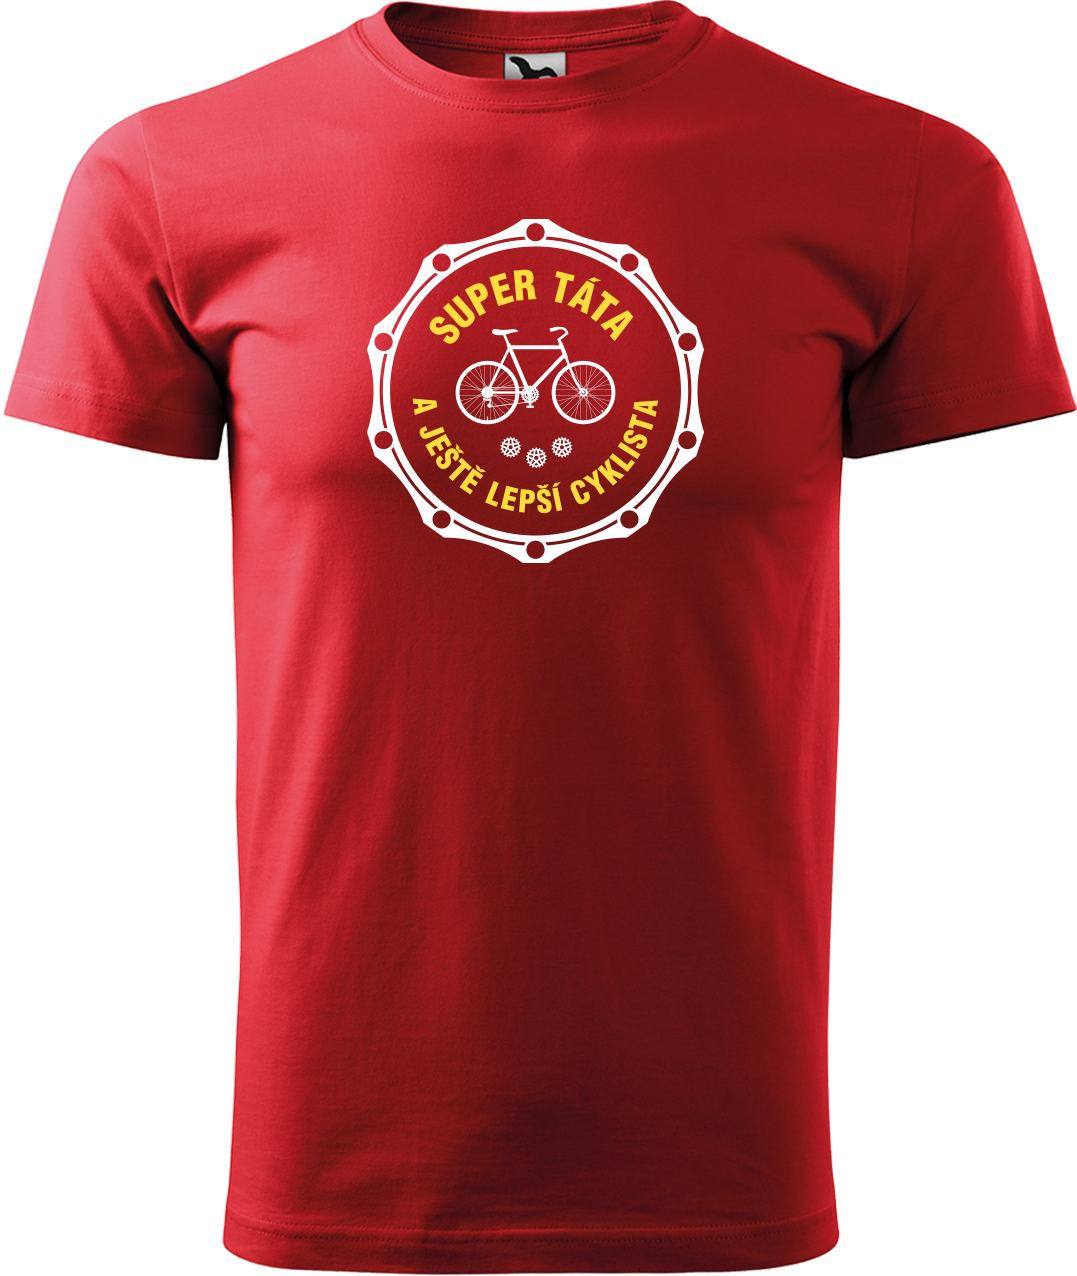 Pánské tričko pro cyklistu - Super táta a ještě lepší cyklista Velikost: M, Barva: Červená (07)